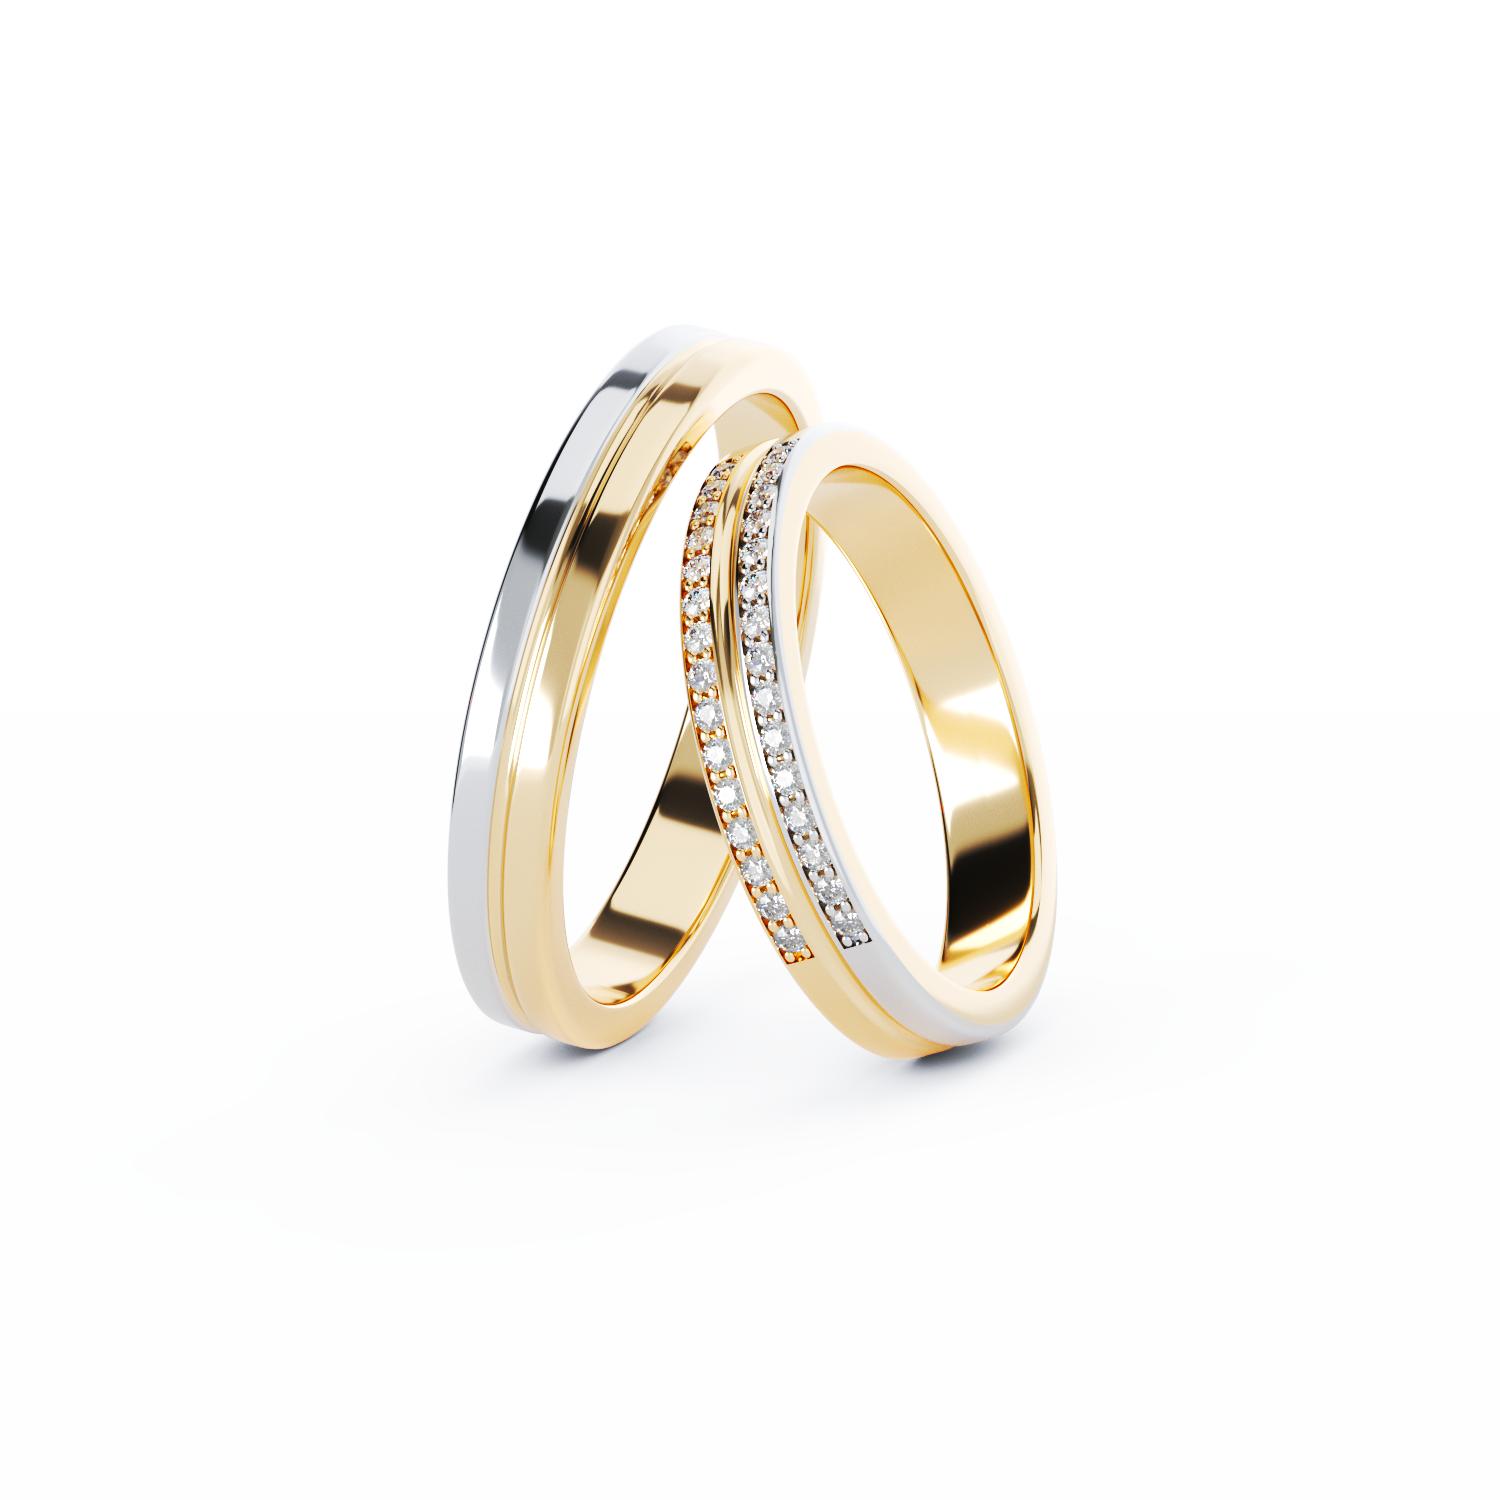 C382 gold wedding rings